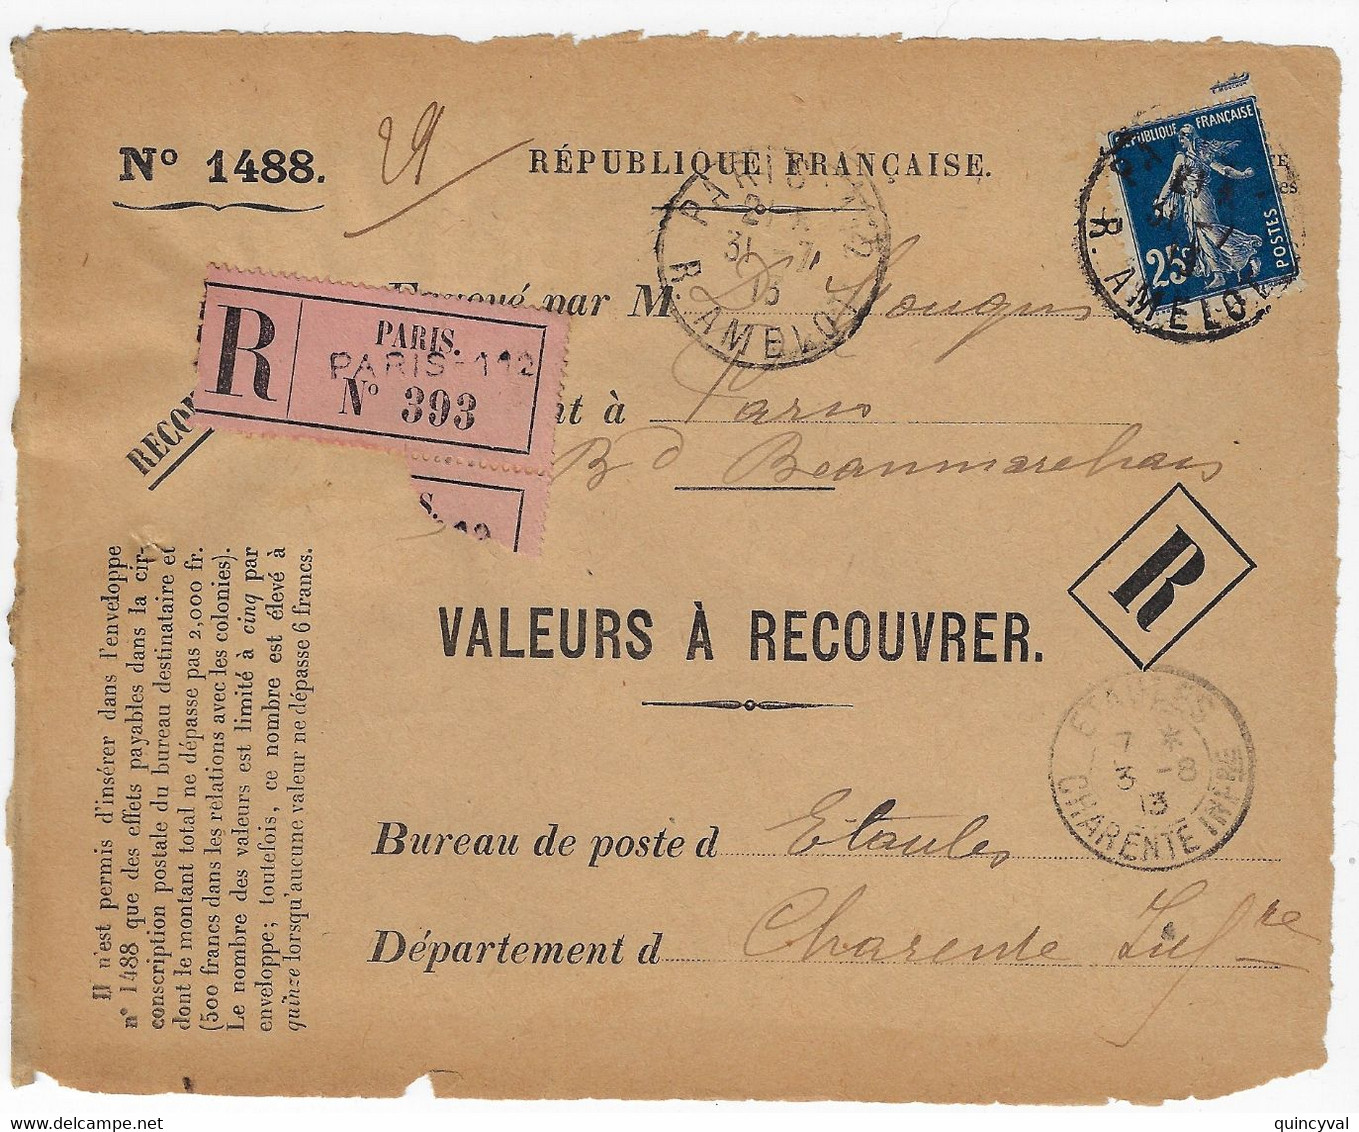 PARIS 112 Valeur à Recouvrer 1488 Yv 140 Semeuse 25c Bleu Ob 1915 Dest Etaules Charentes Inf Etiquette Paris Imprimée - Covers & Documents